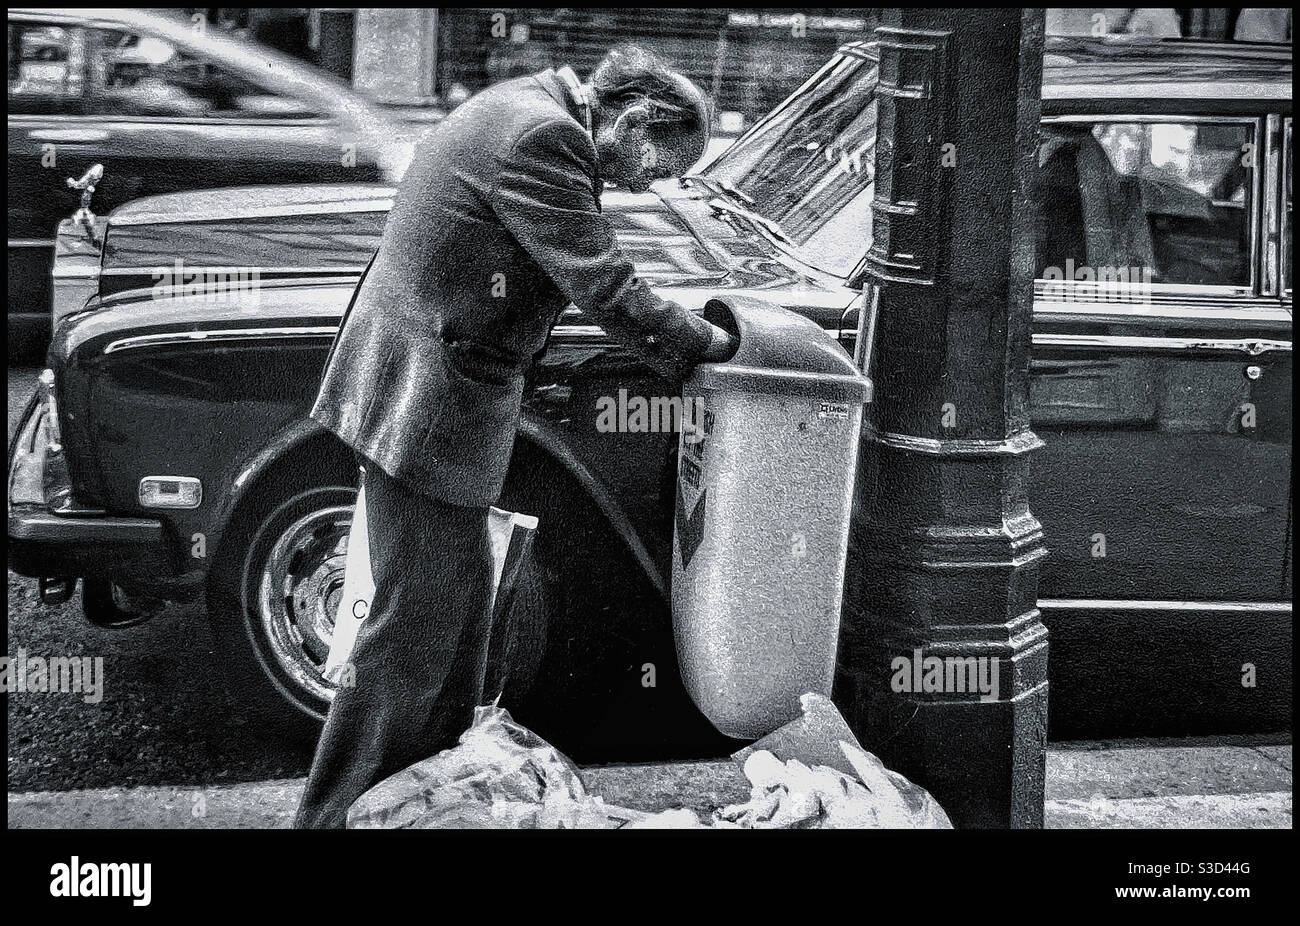 Un homme s'enracine dans un casier à ordures à Londres Banque D'Images